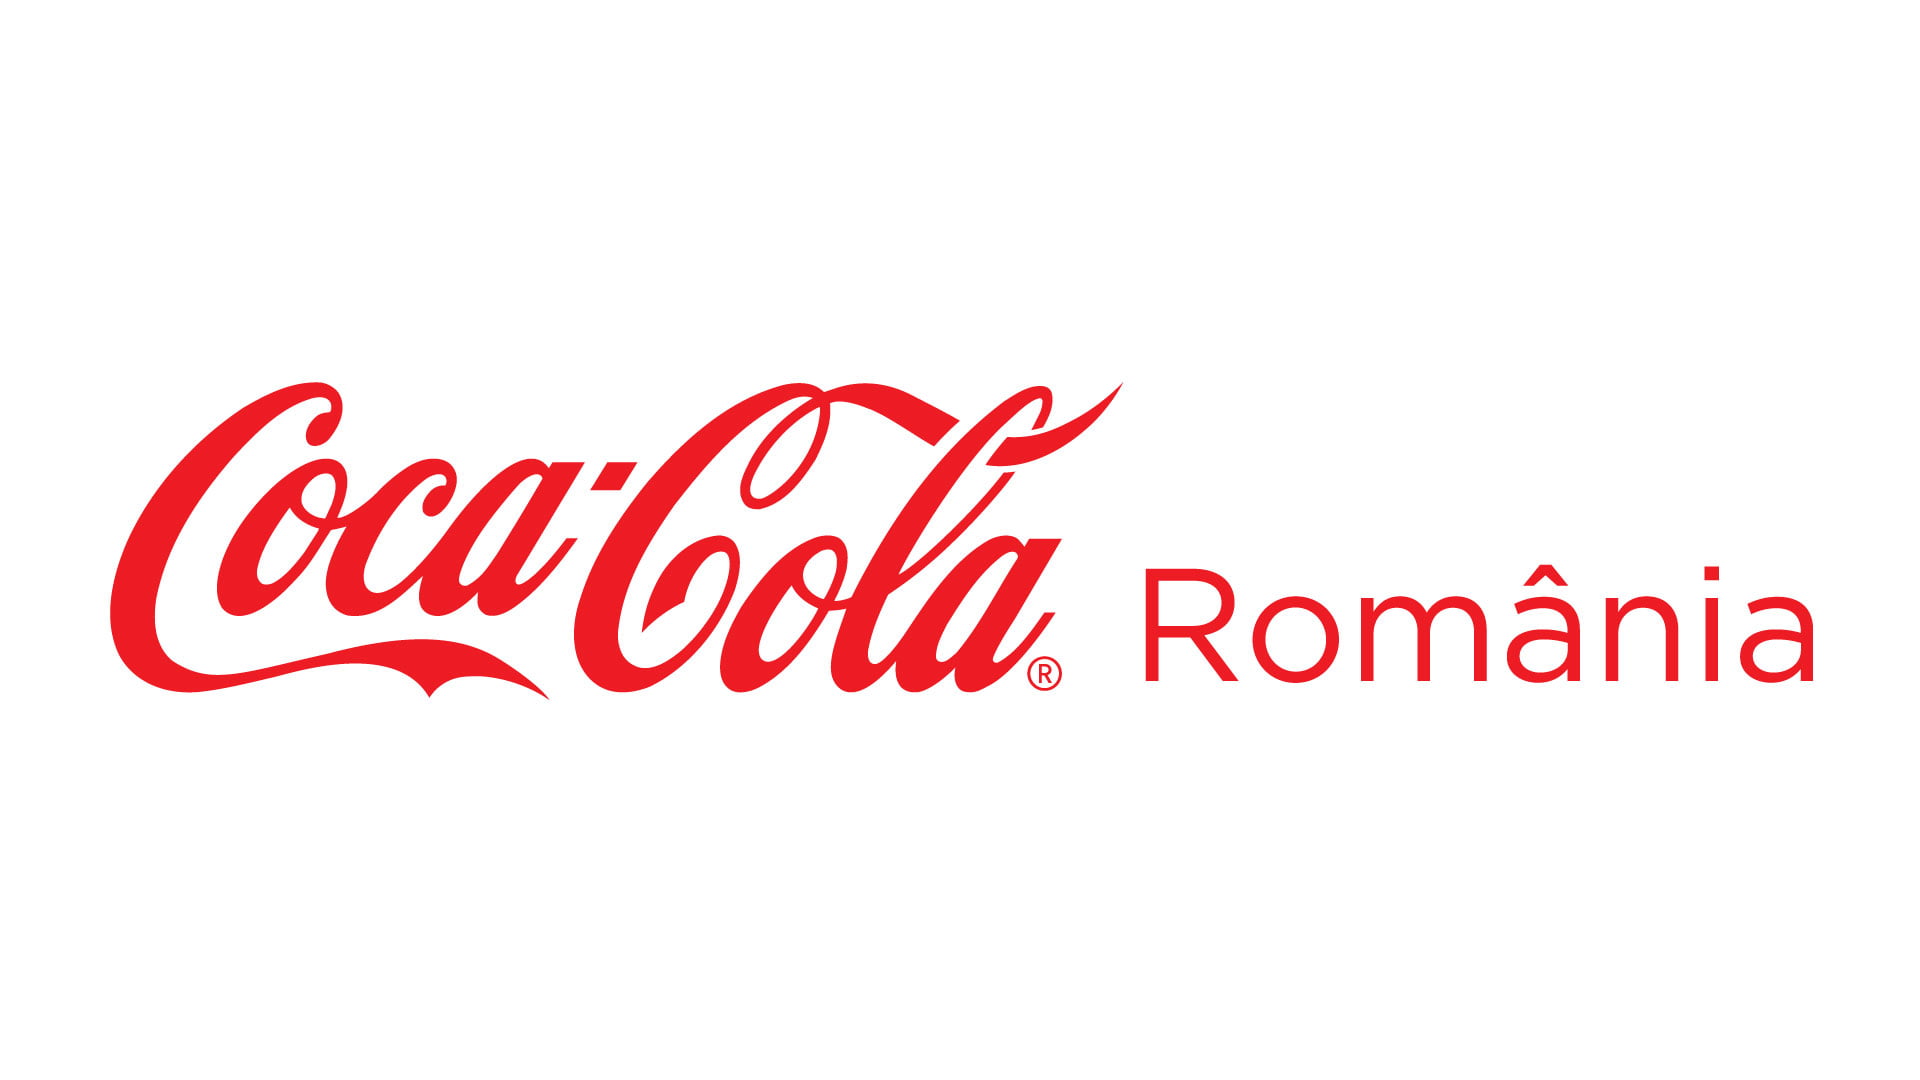 CocaCola-Romania_1